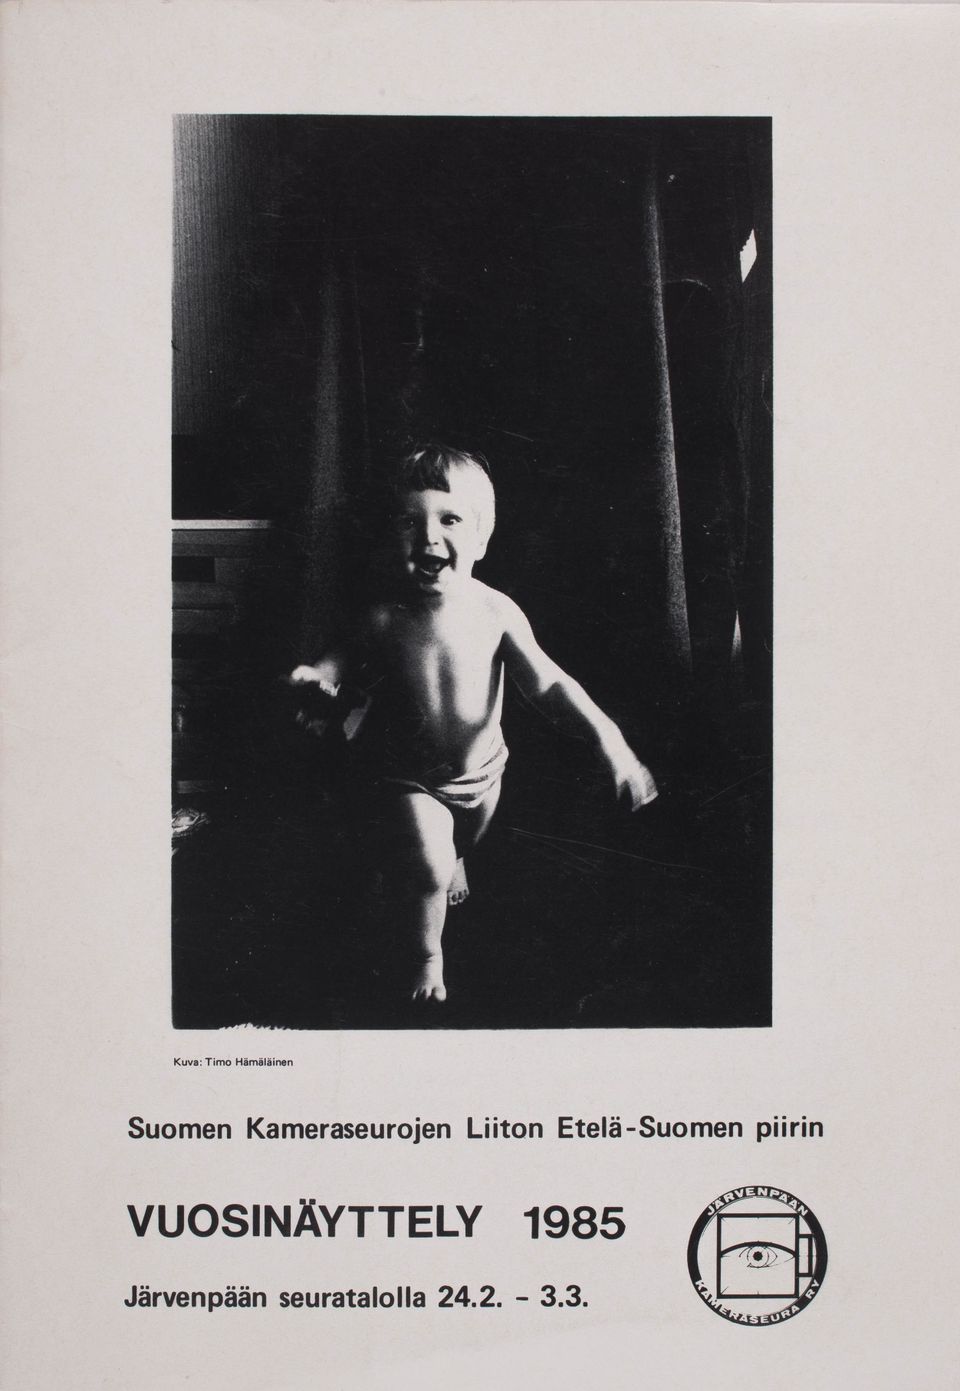 Suomen Kameraseurojen Liiton Etelä-Suomen piirin VUOSINÄYTTELY 1985